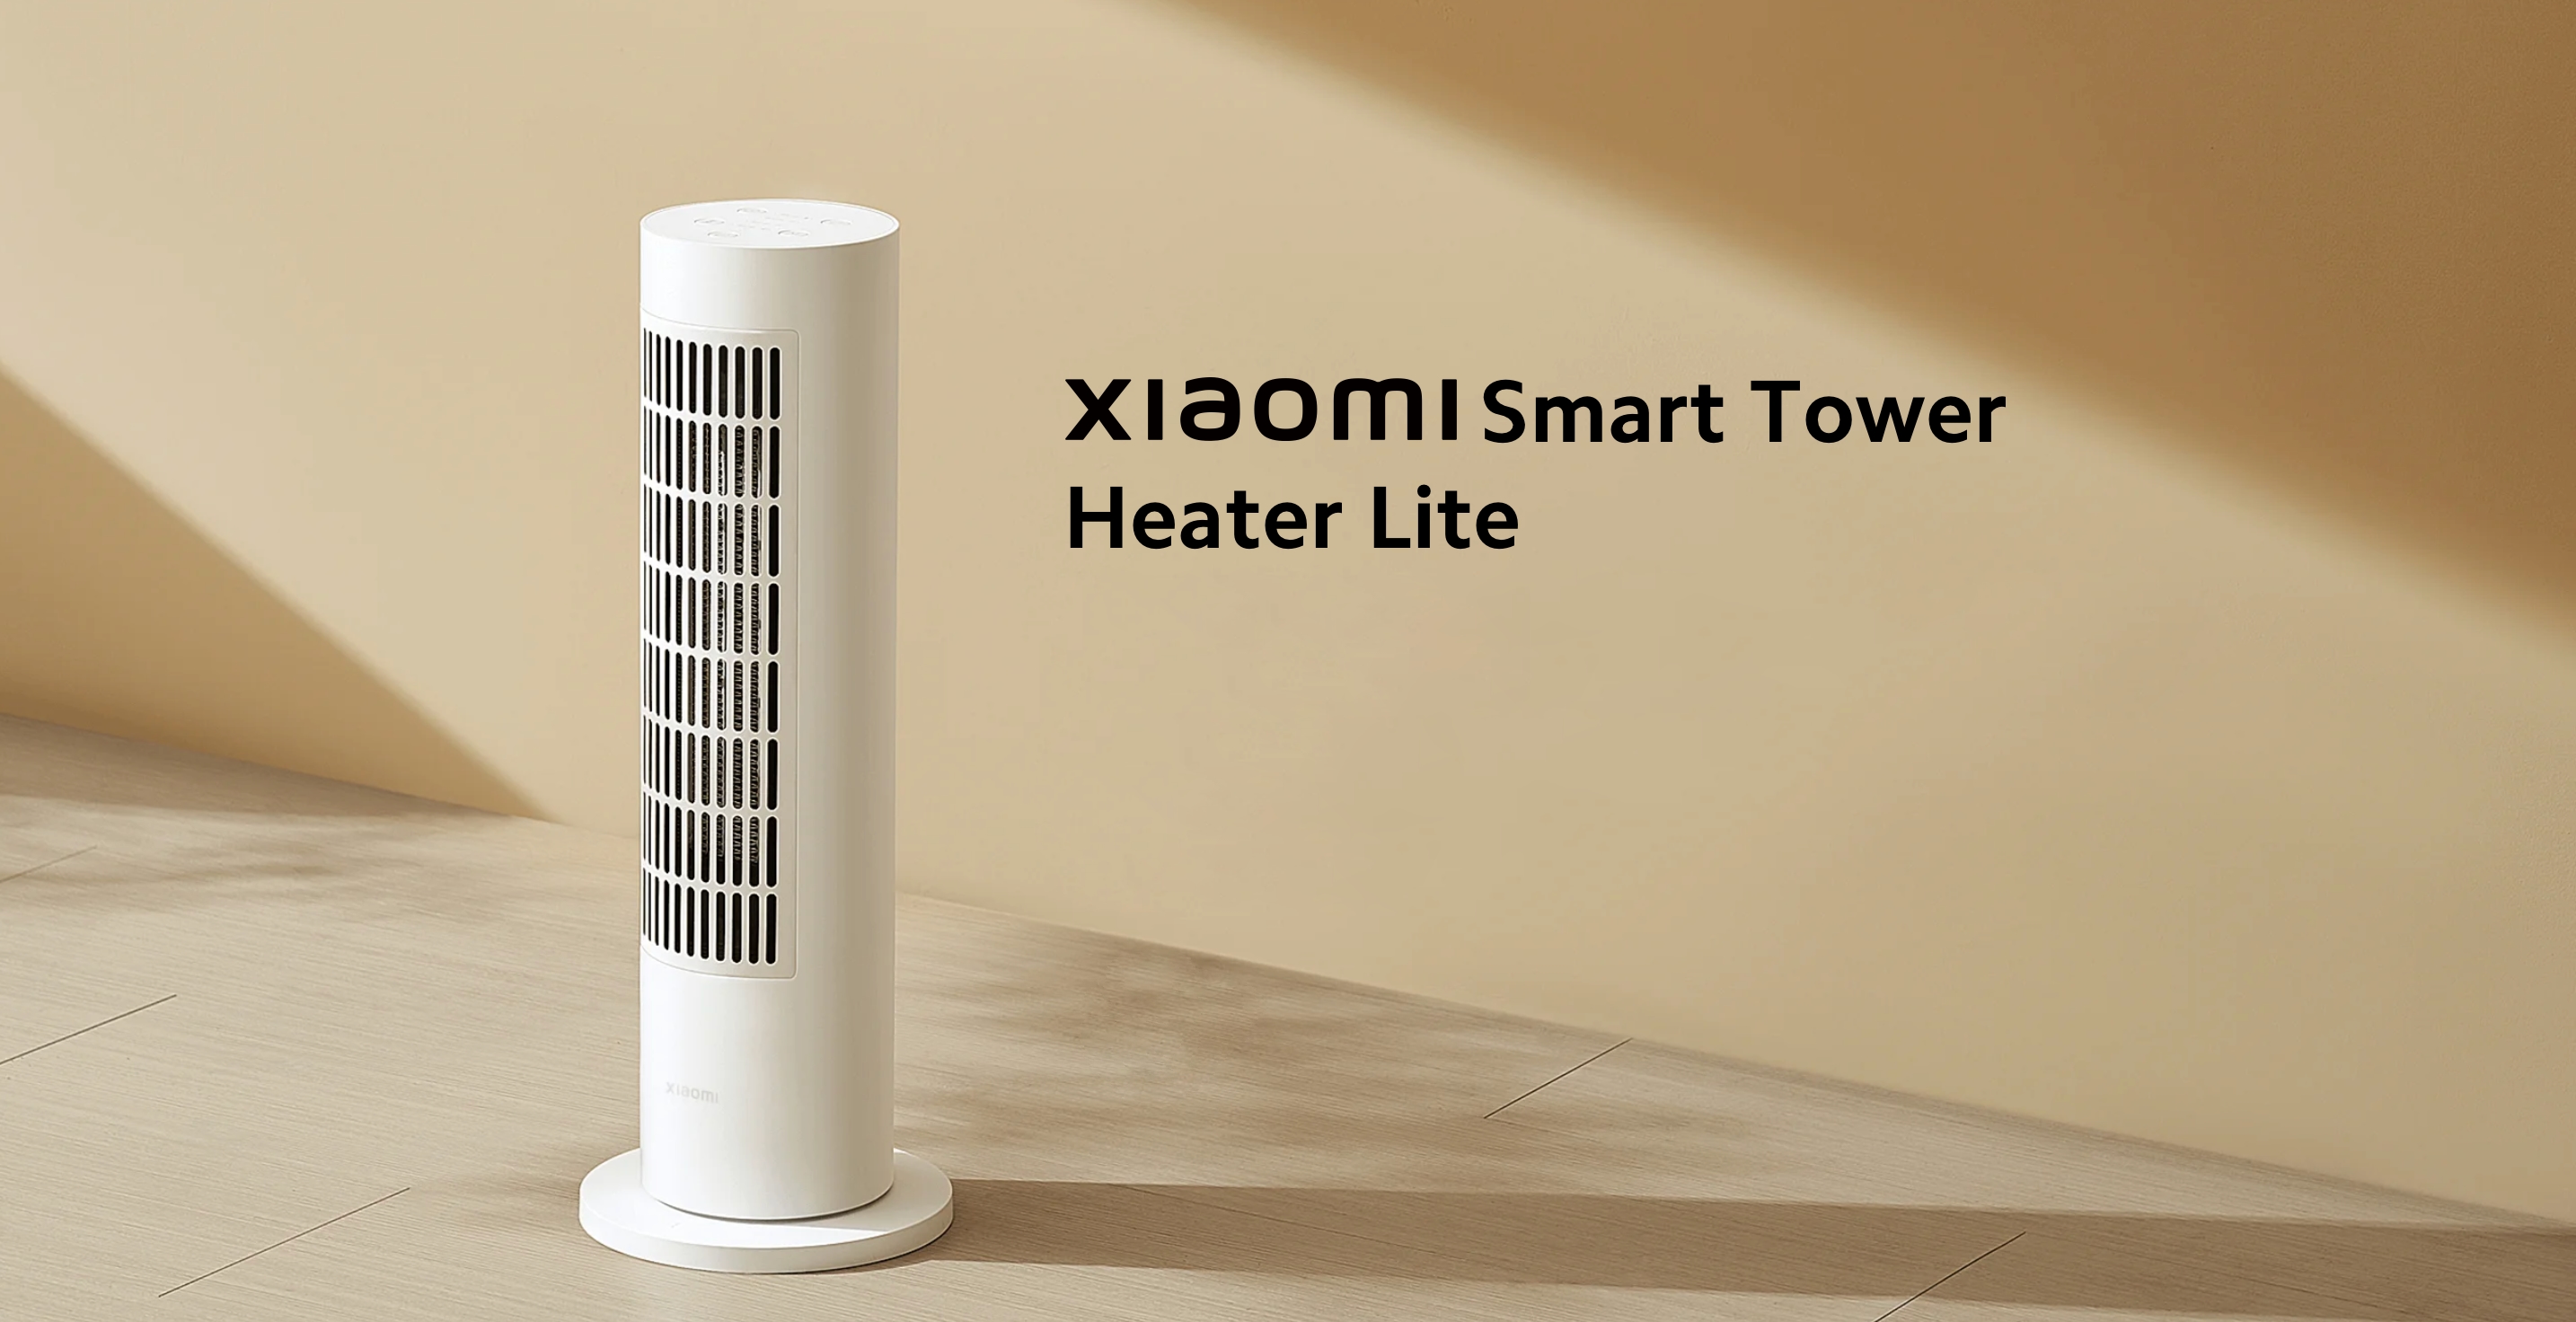 Xiaomi har introduceret et smart varmeapparat i Europa med en indbygget temperatursensor og en pris fra 99 euro.